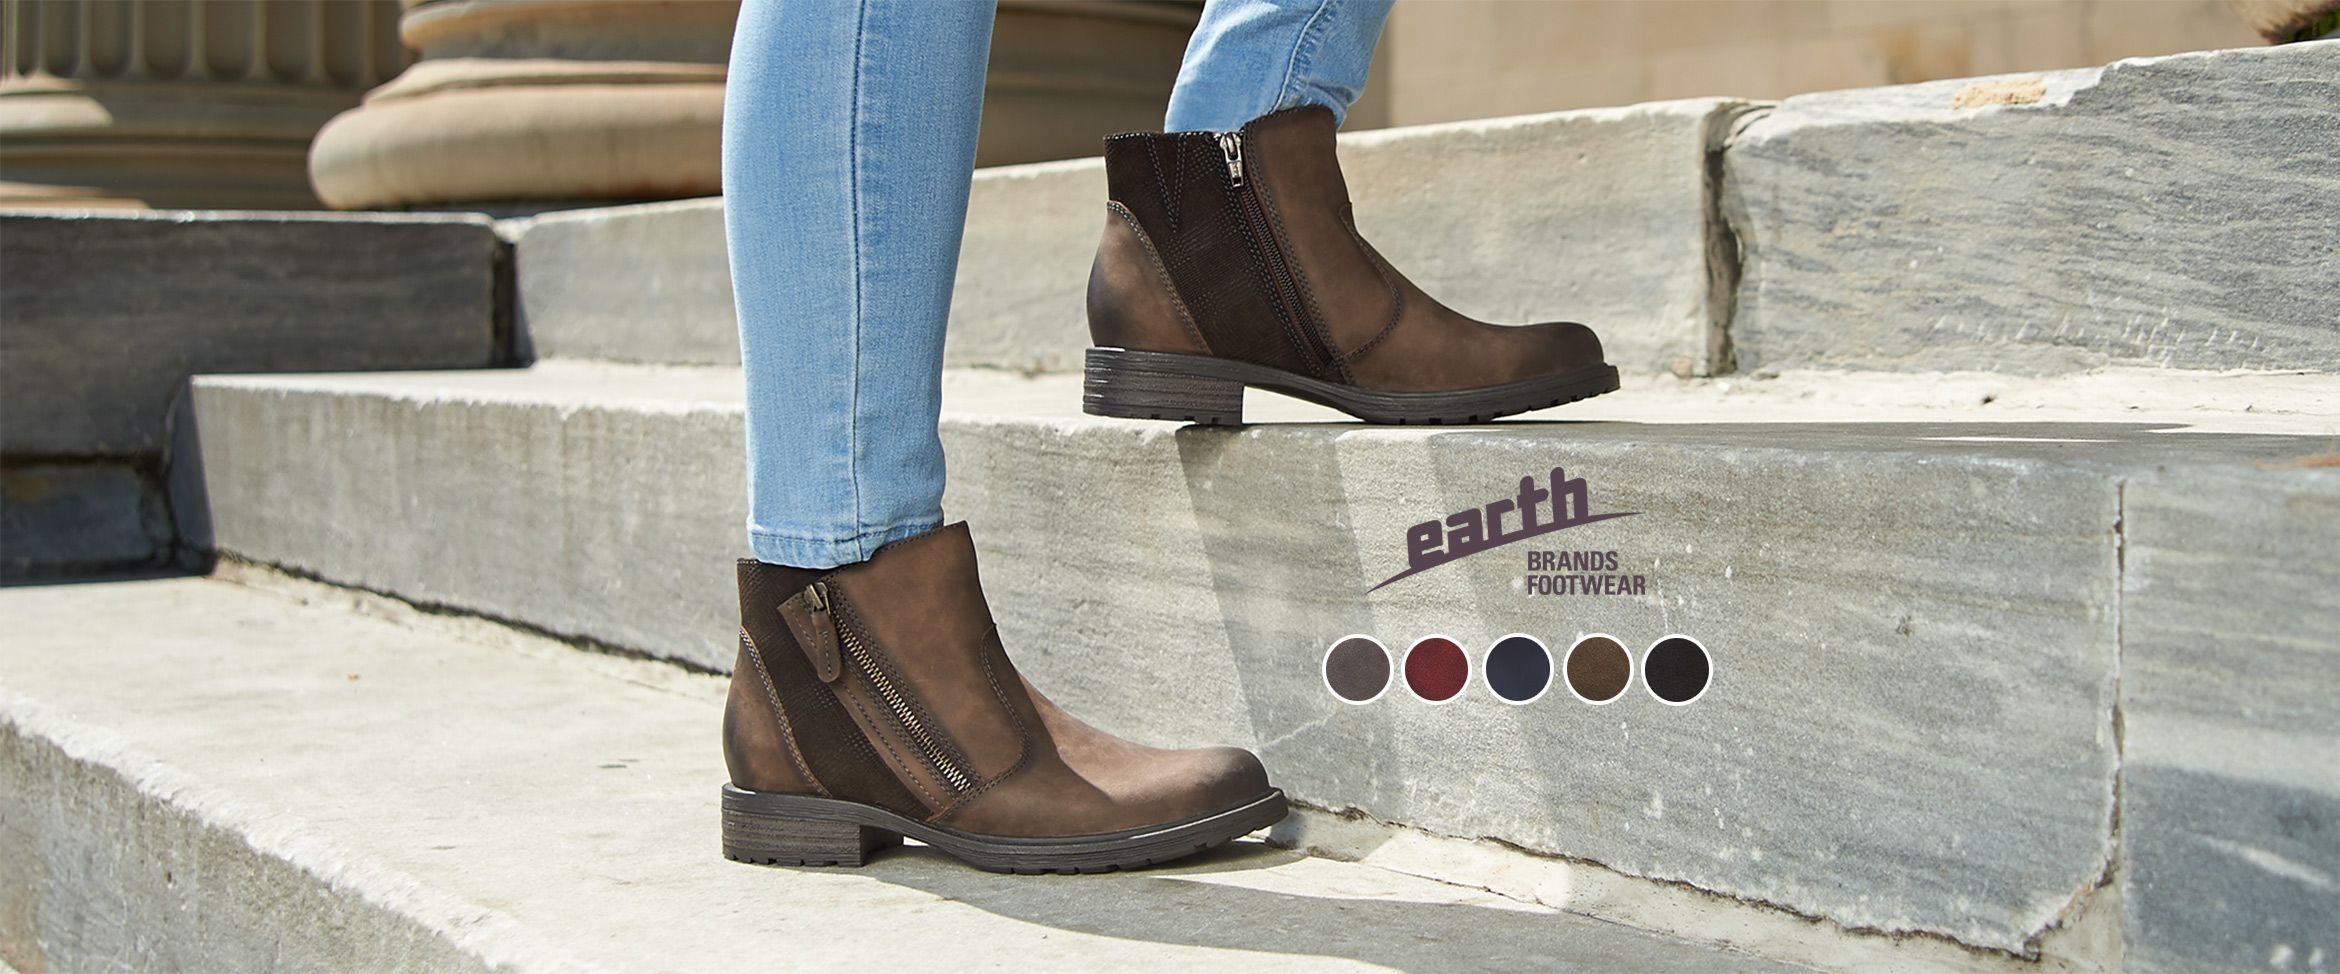 earth boots qvc